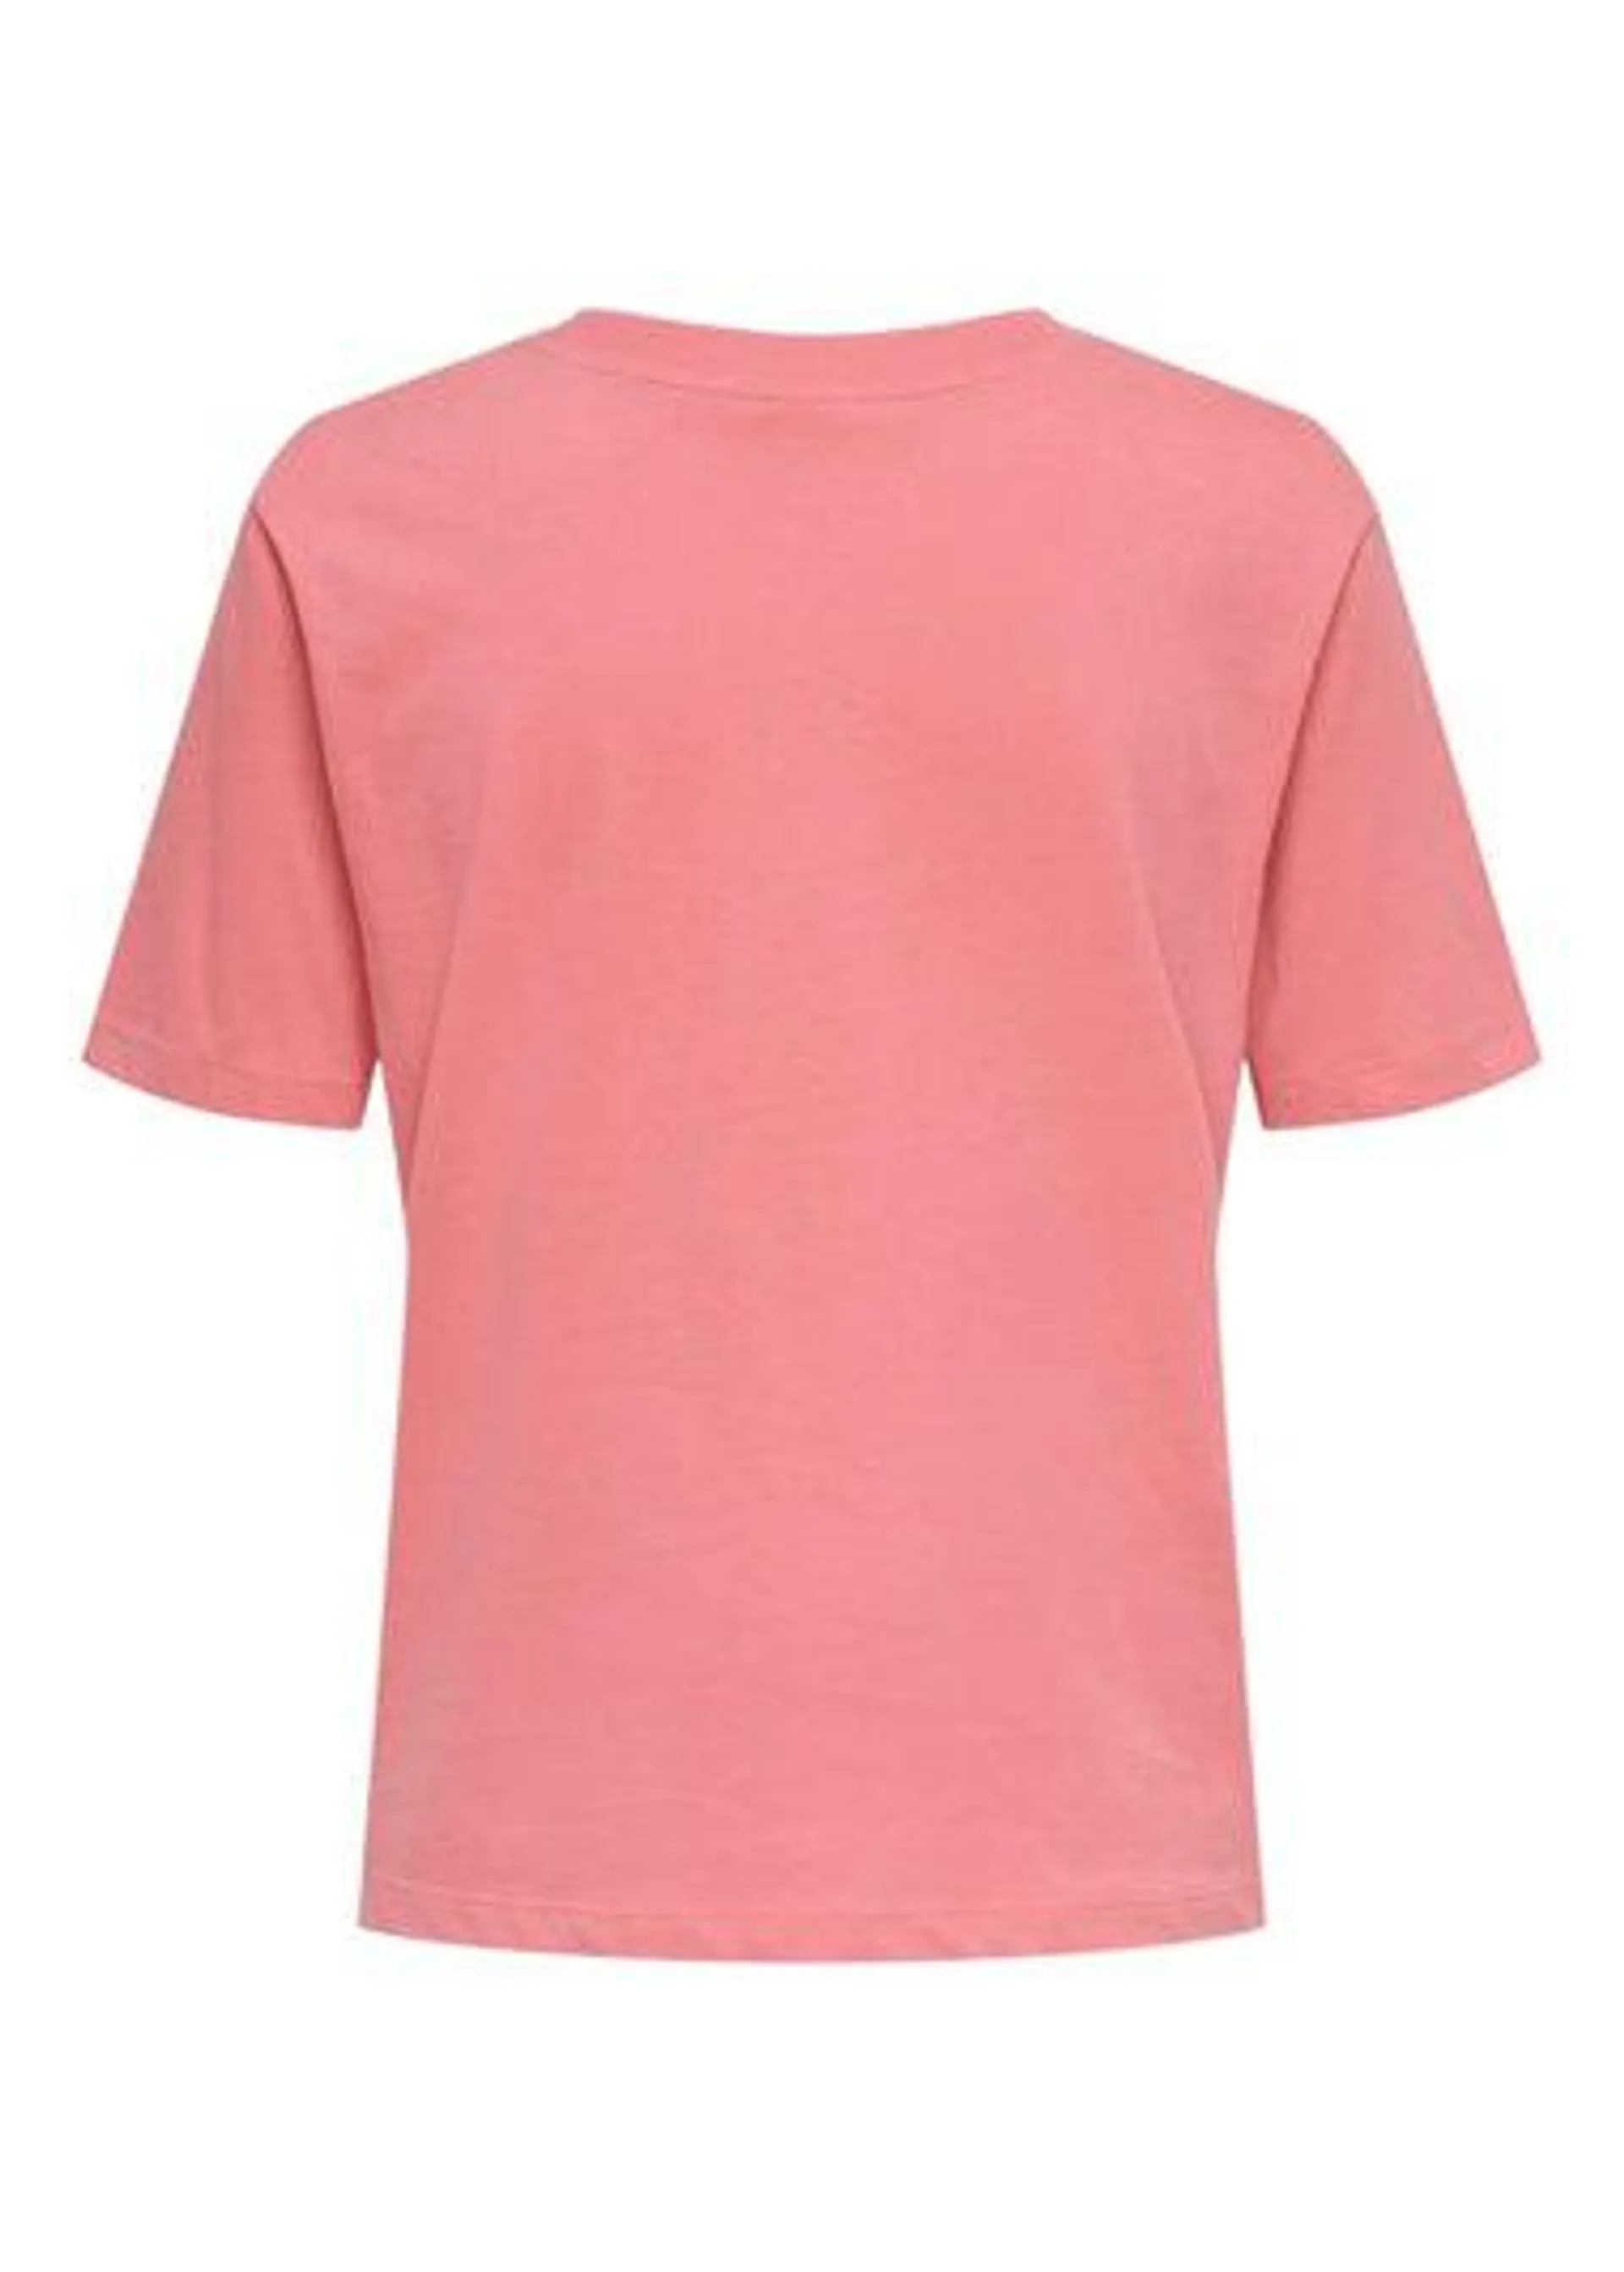 JDY Vivi Life Pink T-Shirt - S - UK 8